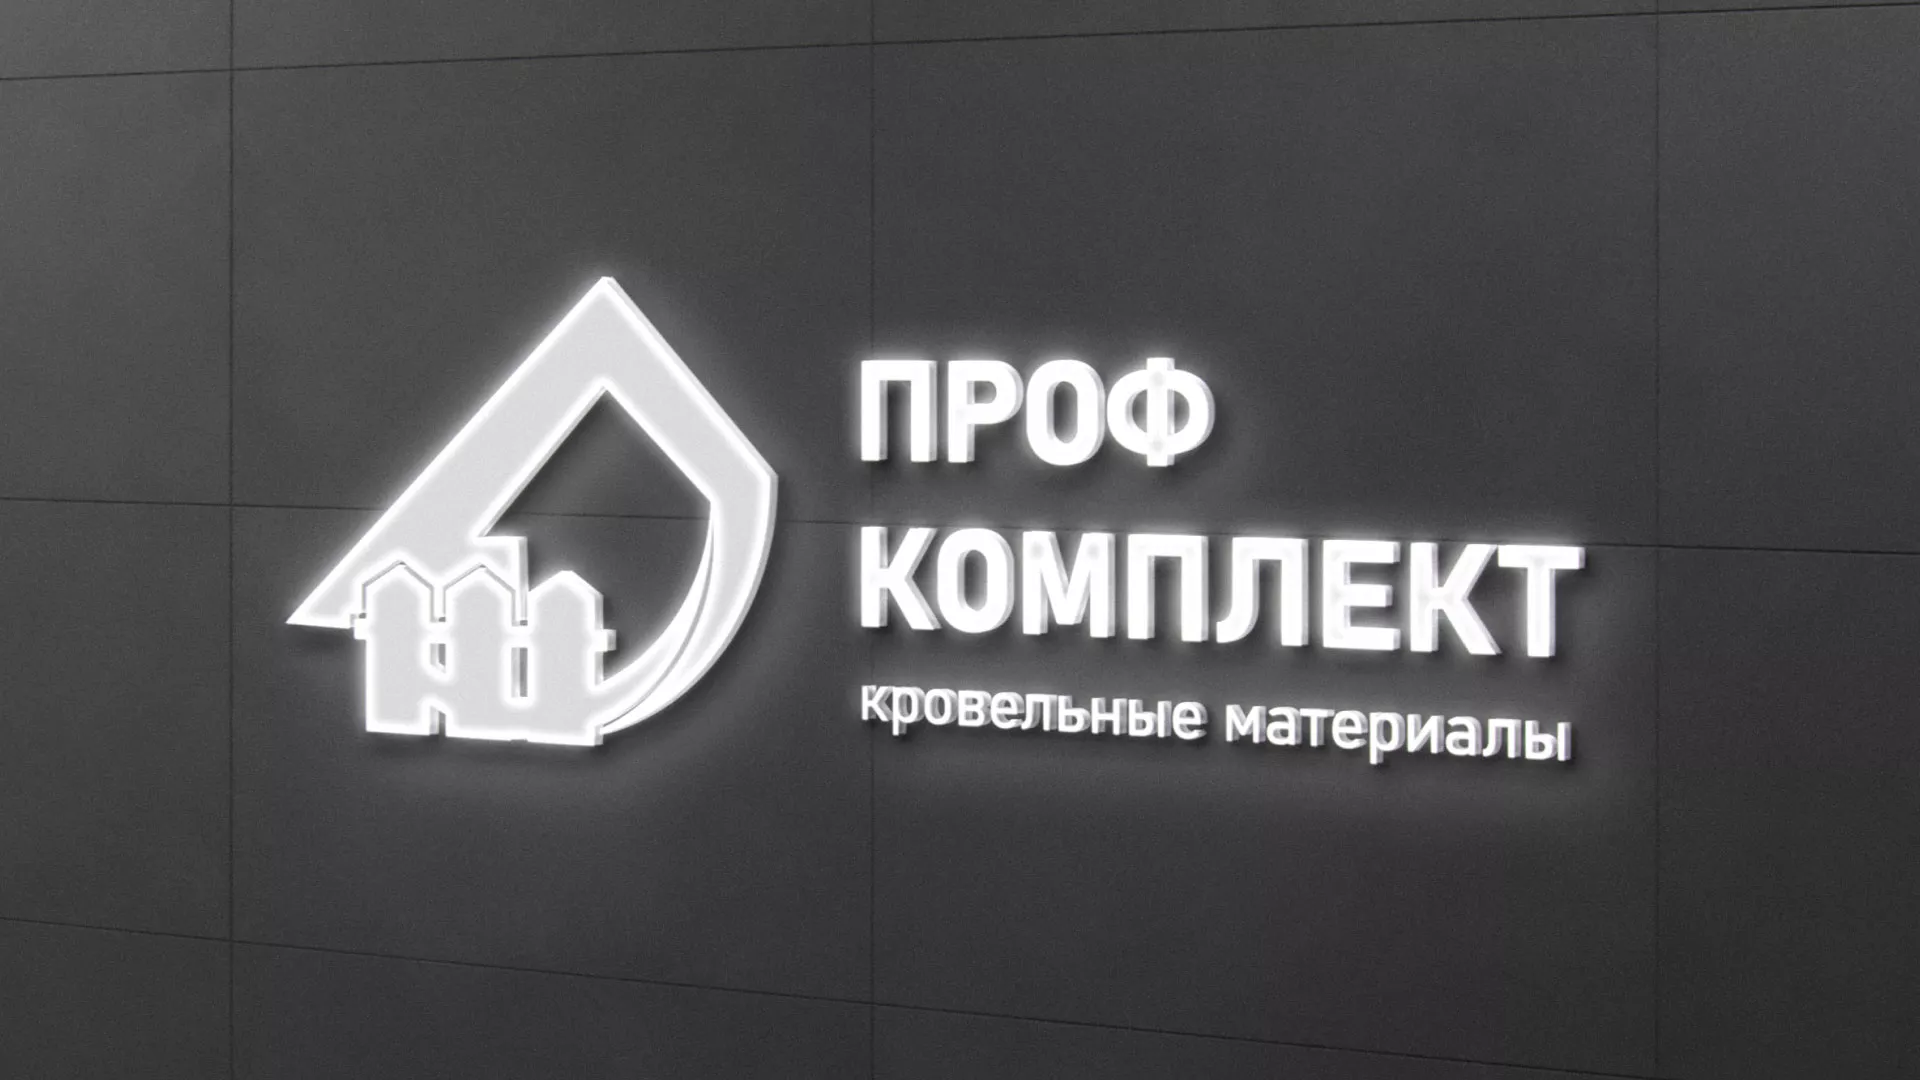 Разработка логотипа «Проф Комплект» в Костомукше